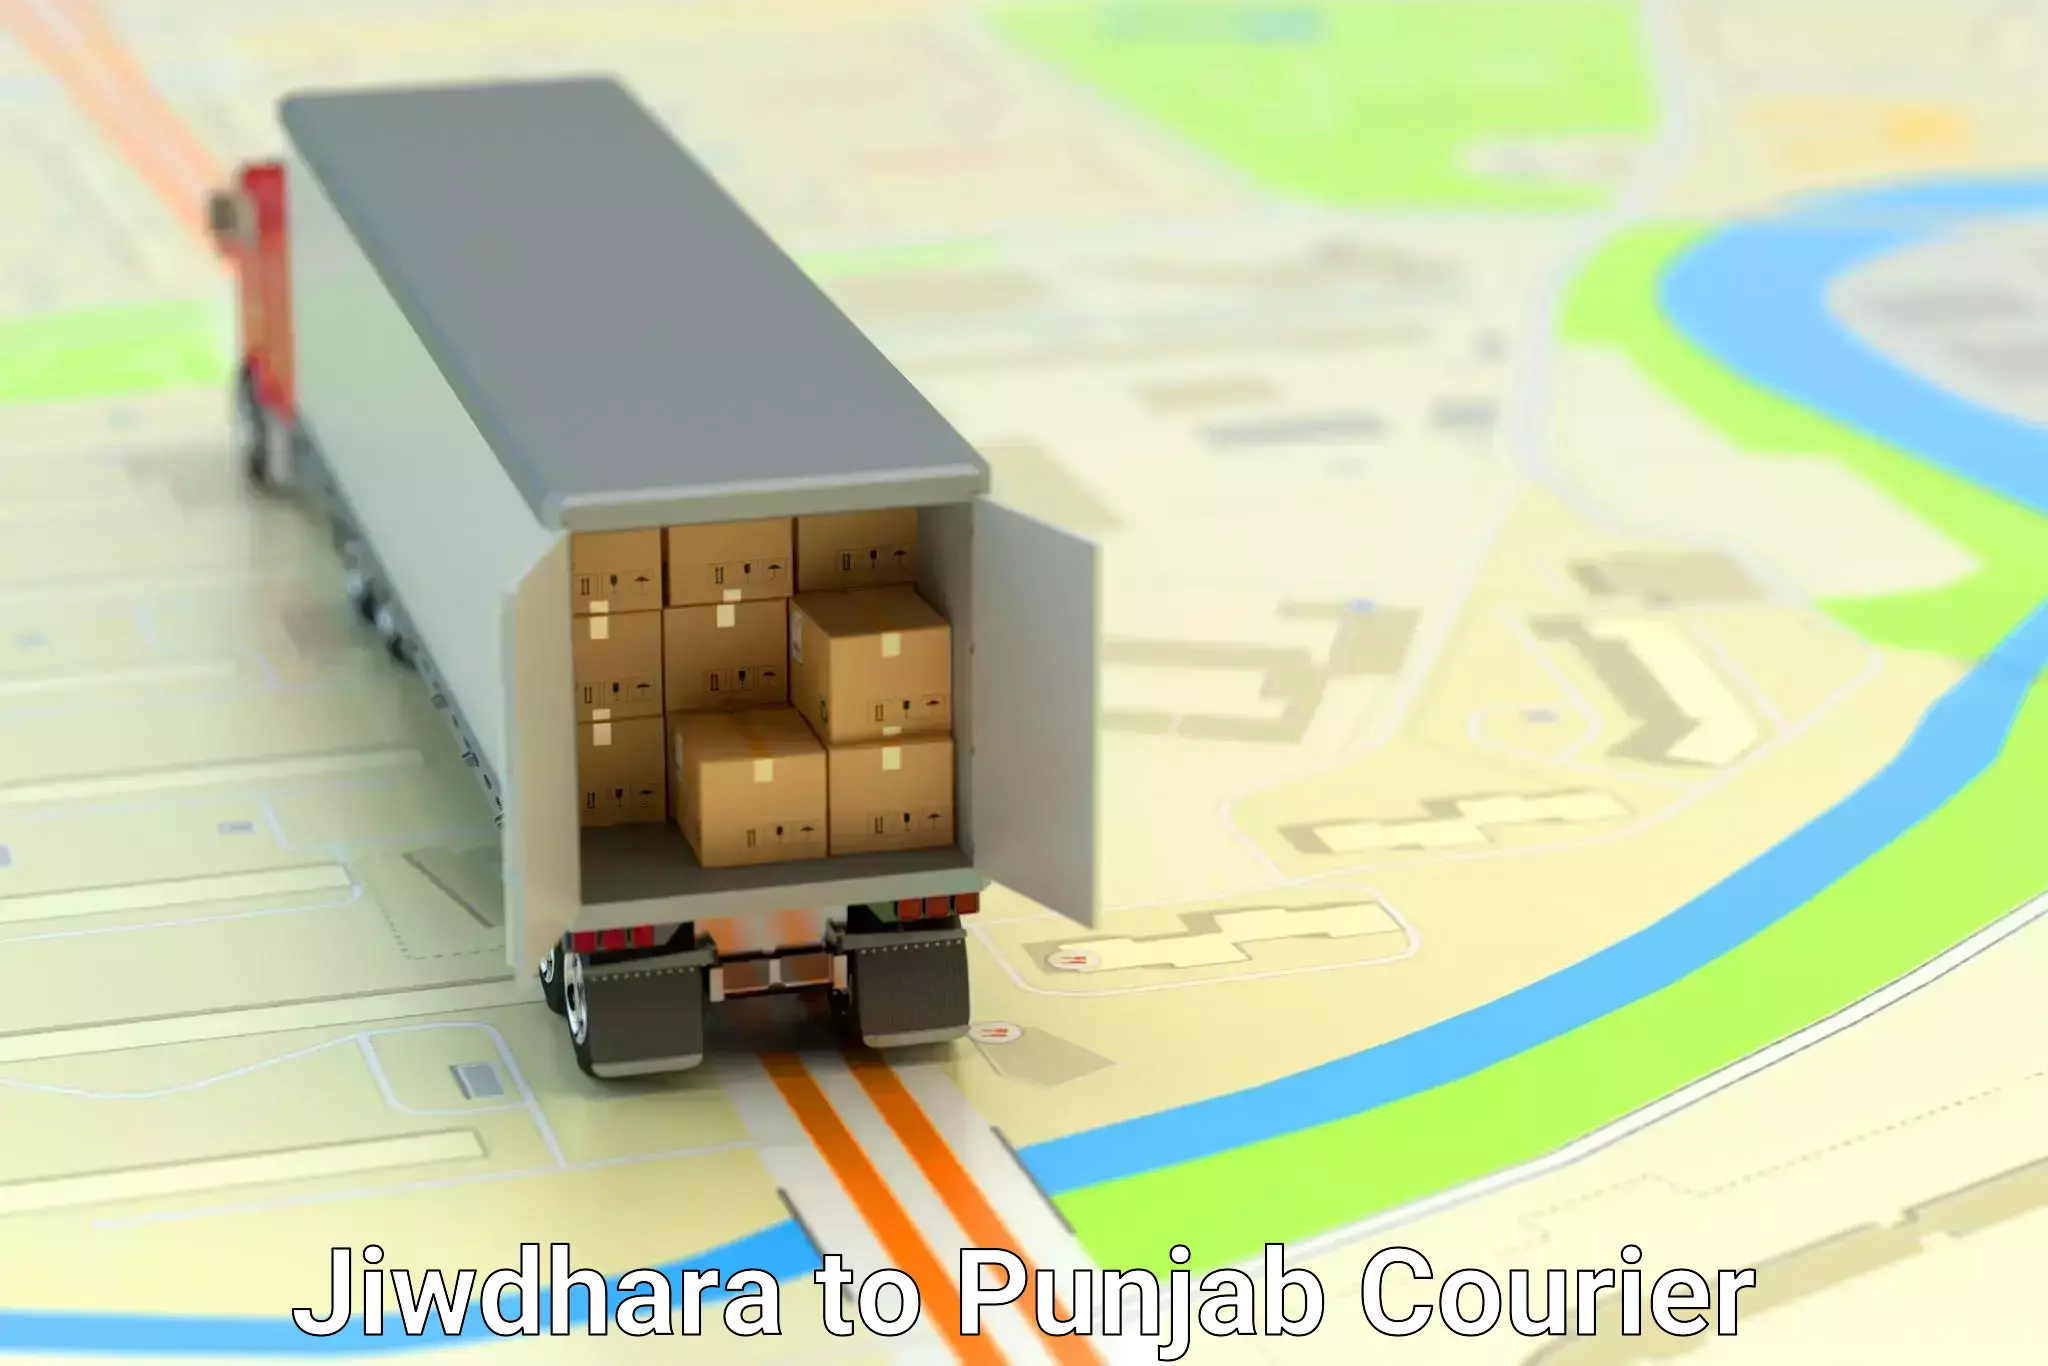 Furniture transport solutions Jiwdhara to Jalandhar